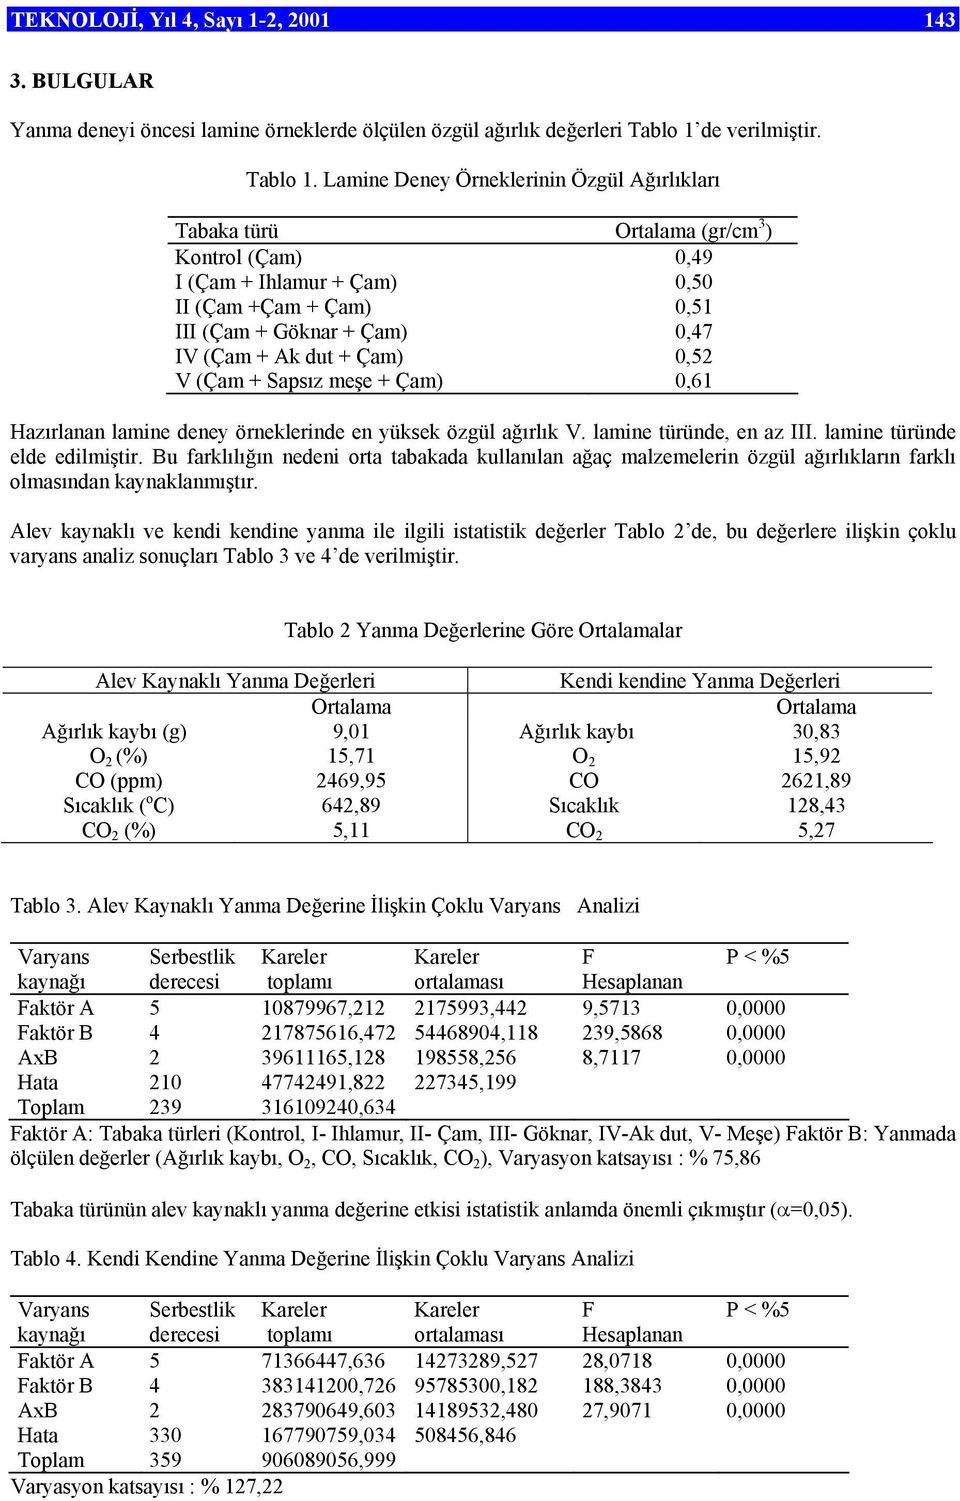 Lamine Deney Örneklerinin Özgül Ağırlıkları Tabaka türü Ortalama (gr/cm 3 ) Kontrol (Çam),49 (Çam + hlamur + Çam),5 (Çam +Çam + Çam),51 (Çam + Göknar + Çam),47 V (Çam + Ak dut + Çam),52 V (Çam +